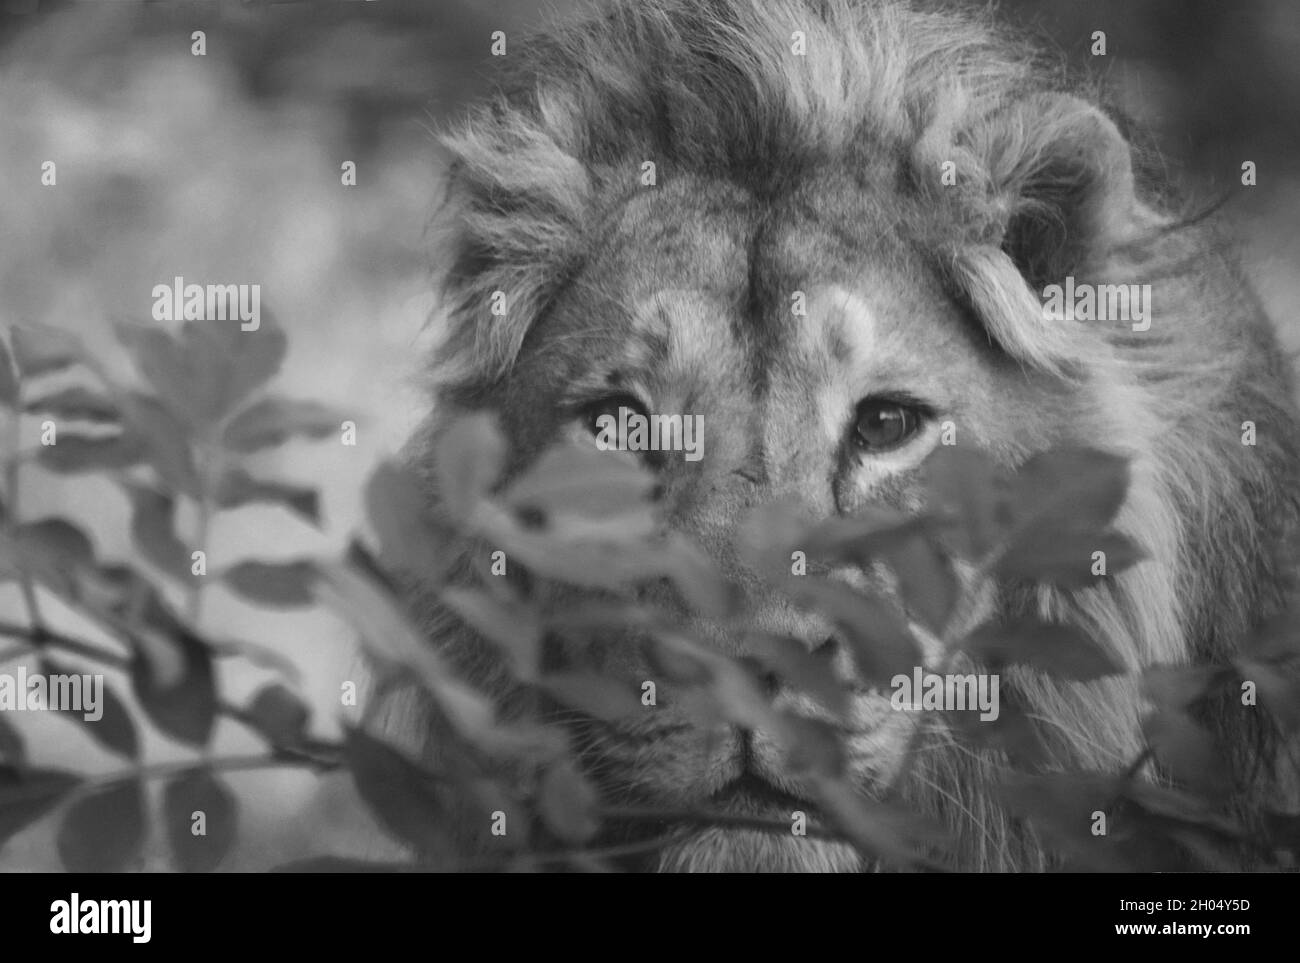 Una foto de primer plano en blanco y negro de la cara y la cabeza de un león macho con sus ojos claramente enfocados mirando a través de frondosos arbustos directamente en la cámara. Foto de stock